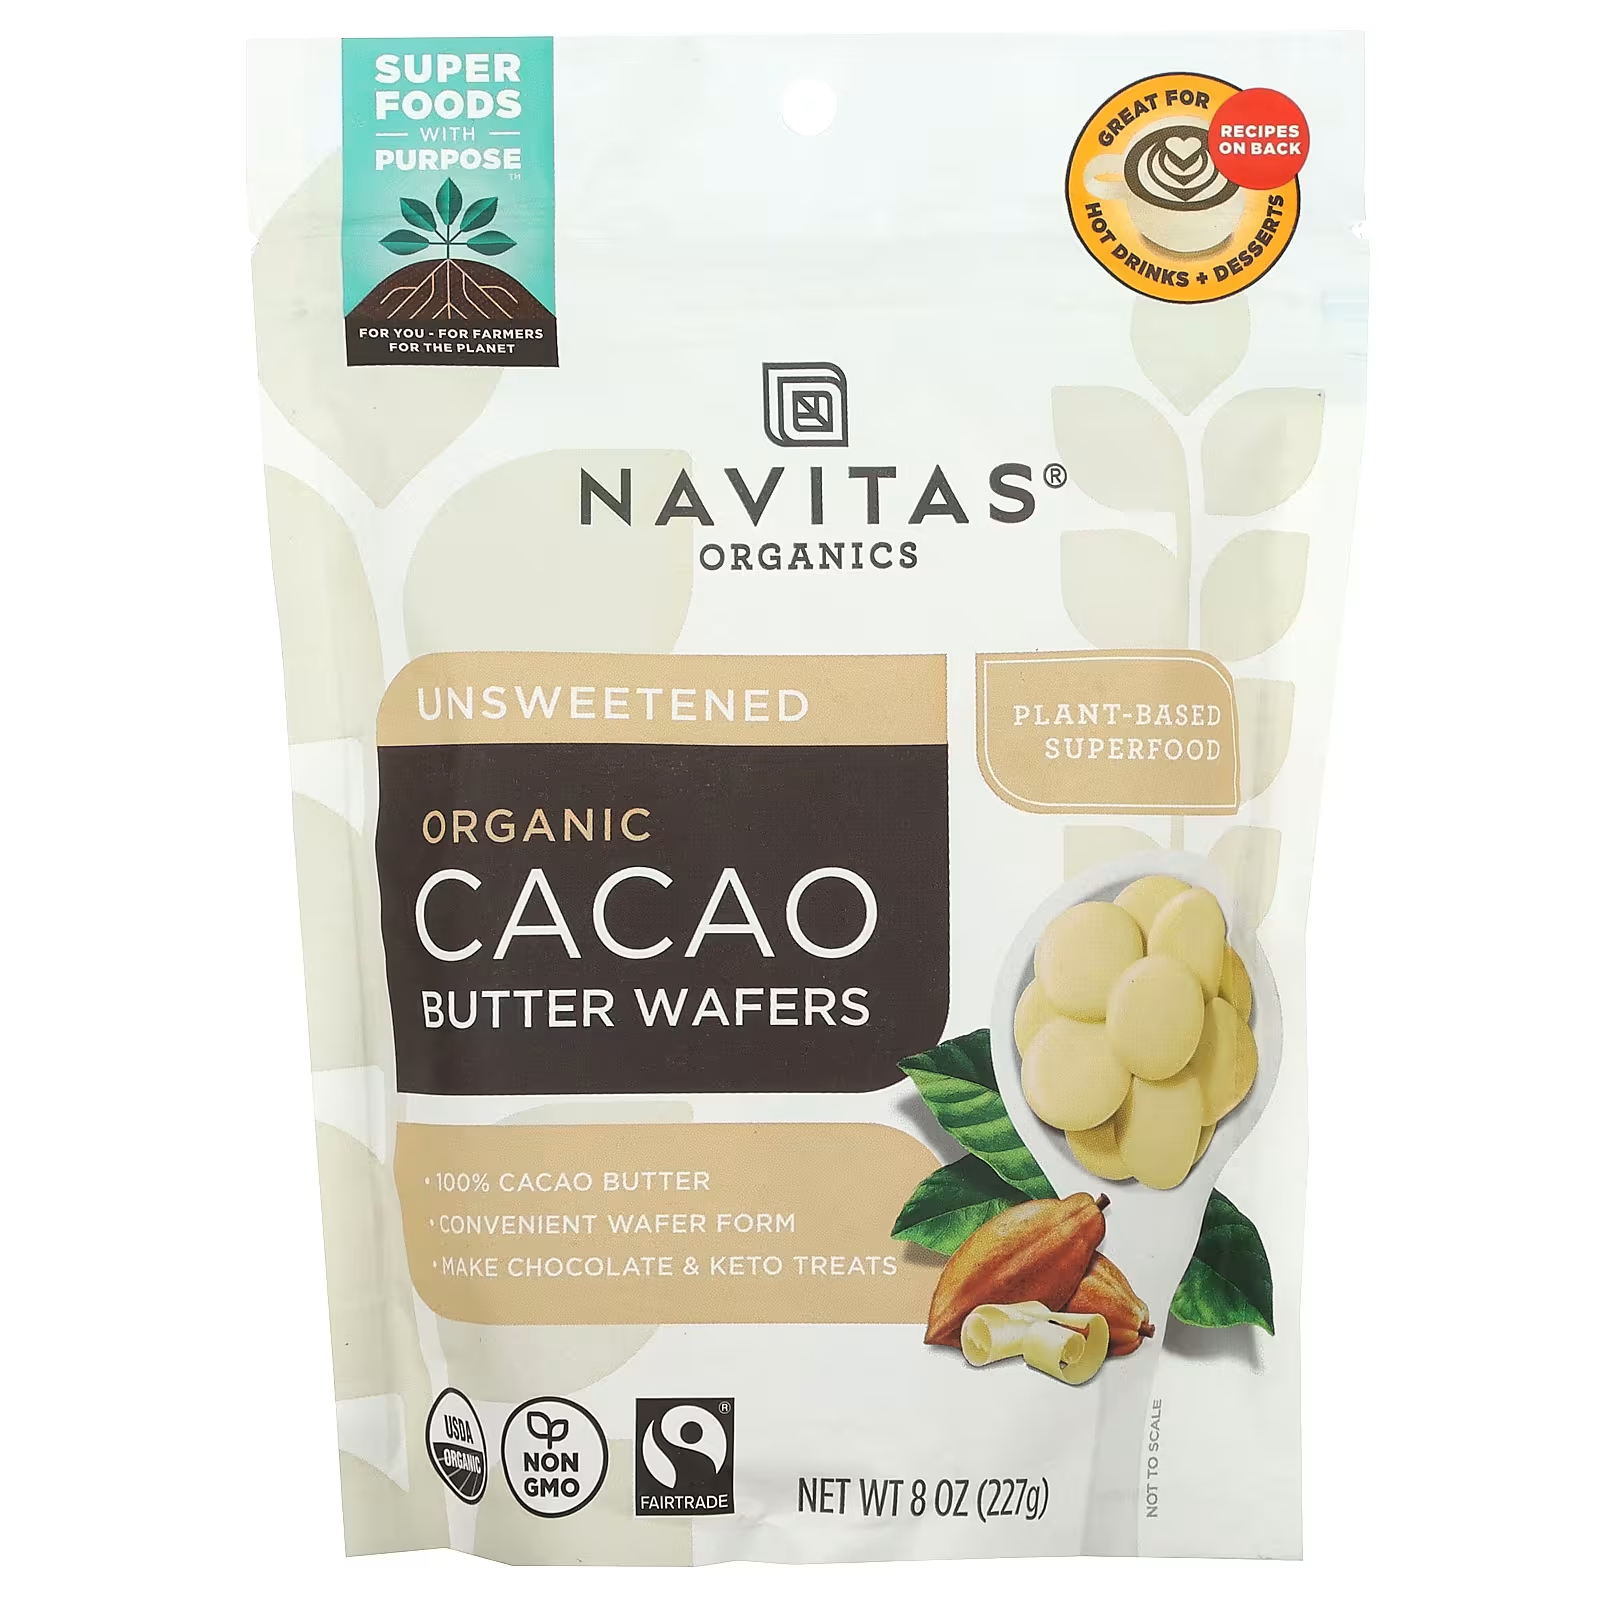 Navitas Organics Органические вафли с маслом какао, несладкие, 8 унций (227 г) navitas organics органические сладкие перья какао 227 г 8 унций